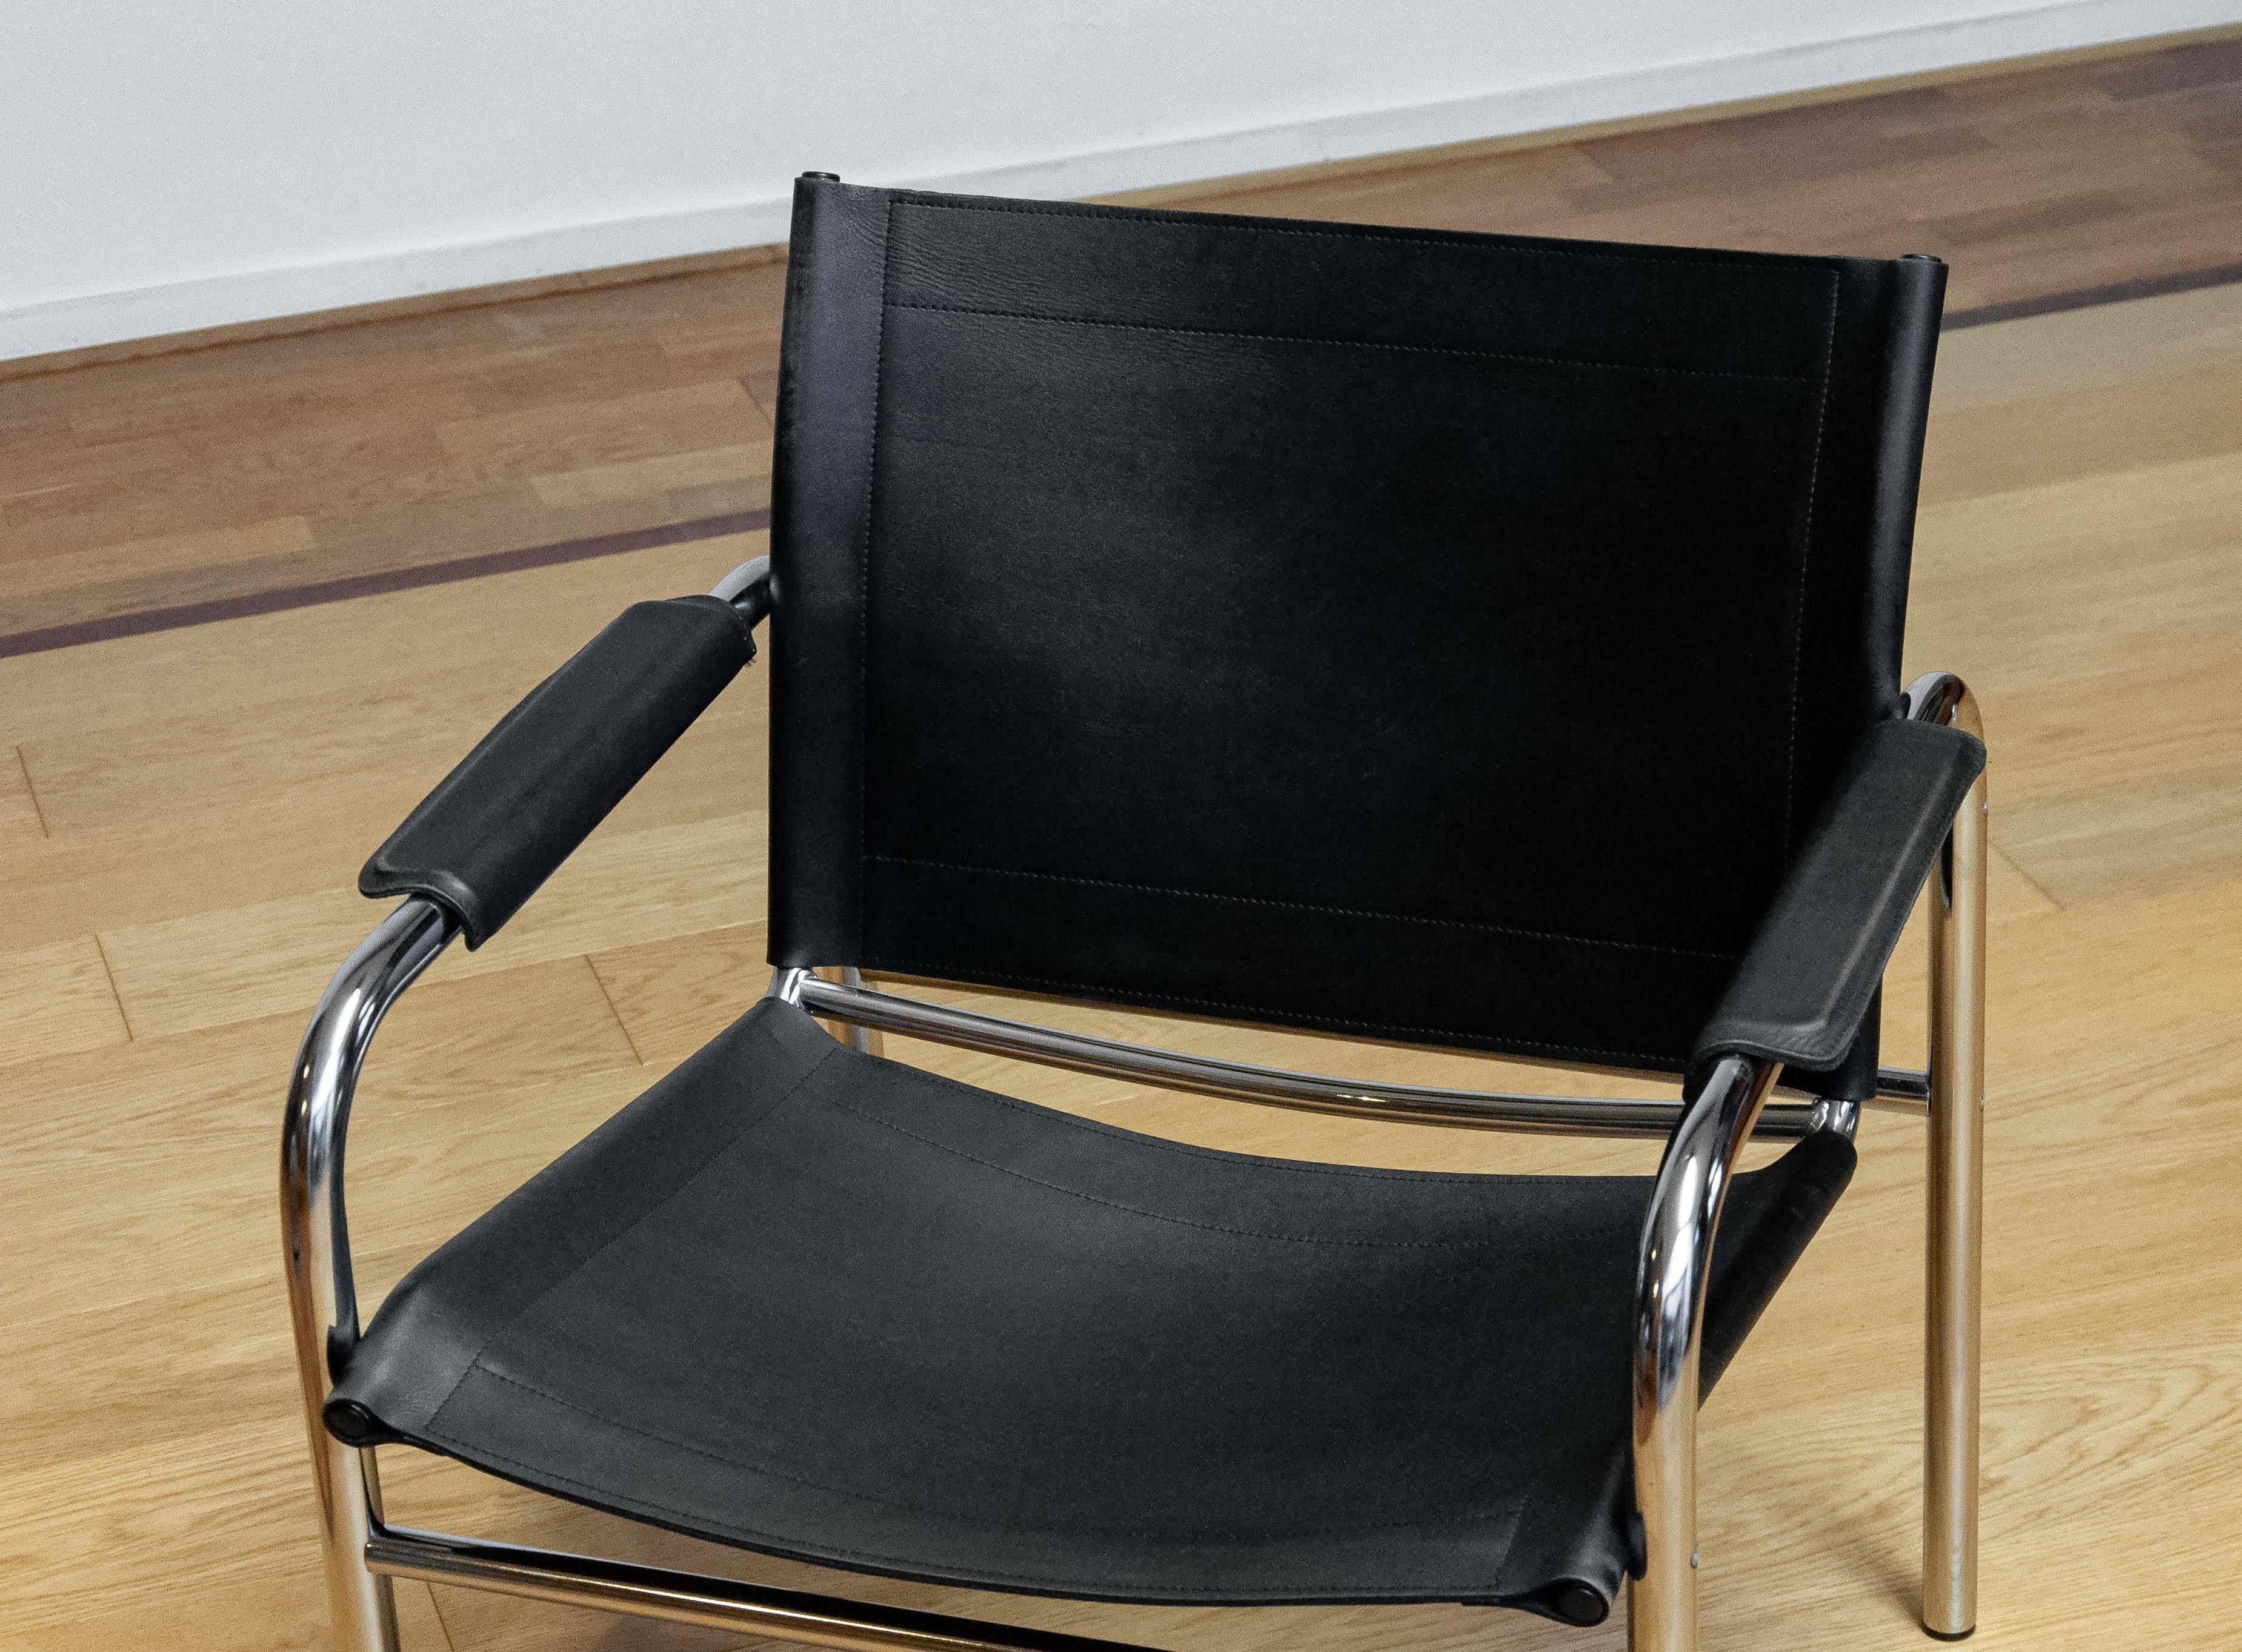 Fauteuil en cuir noir, modèle Klinte, conçu par Tord Bjorklund, pour Ikea en Suède dans les années 1970. La chaise est dotée d'un épais revêtement en cuir et d'un cadre en acier chromé. 
Cette chaise 'Condit' est dans l'ensemble en très bon